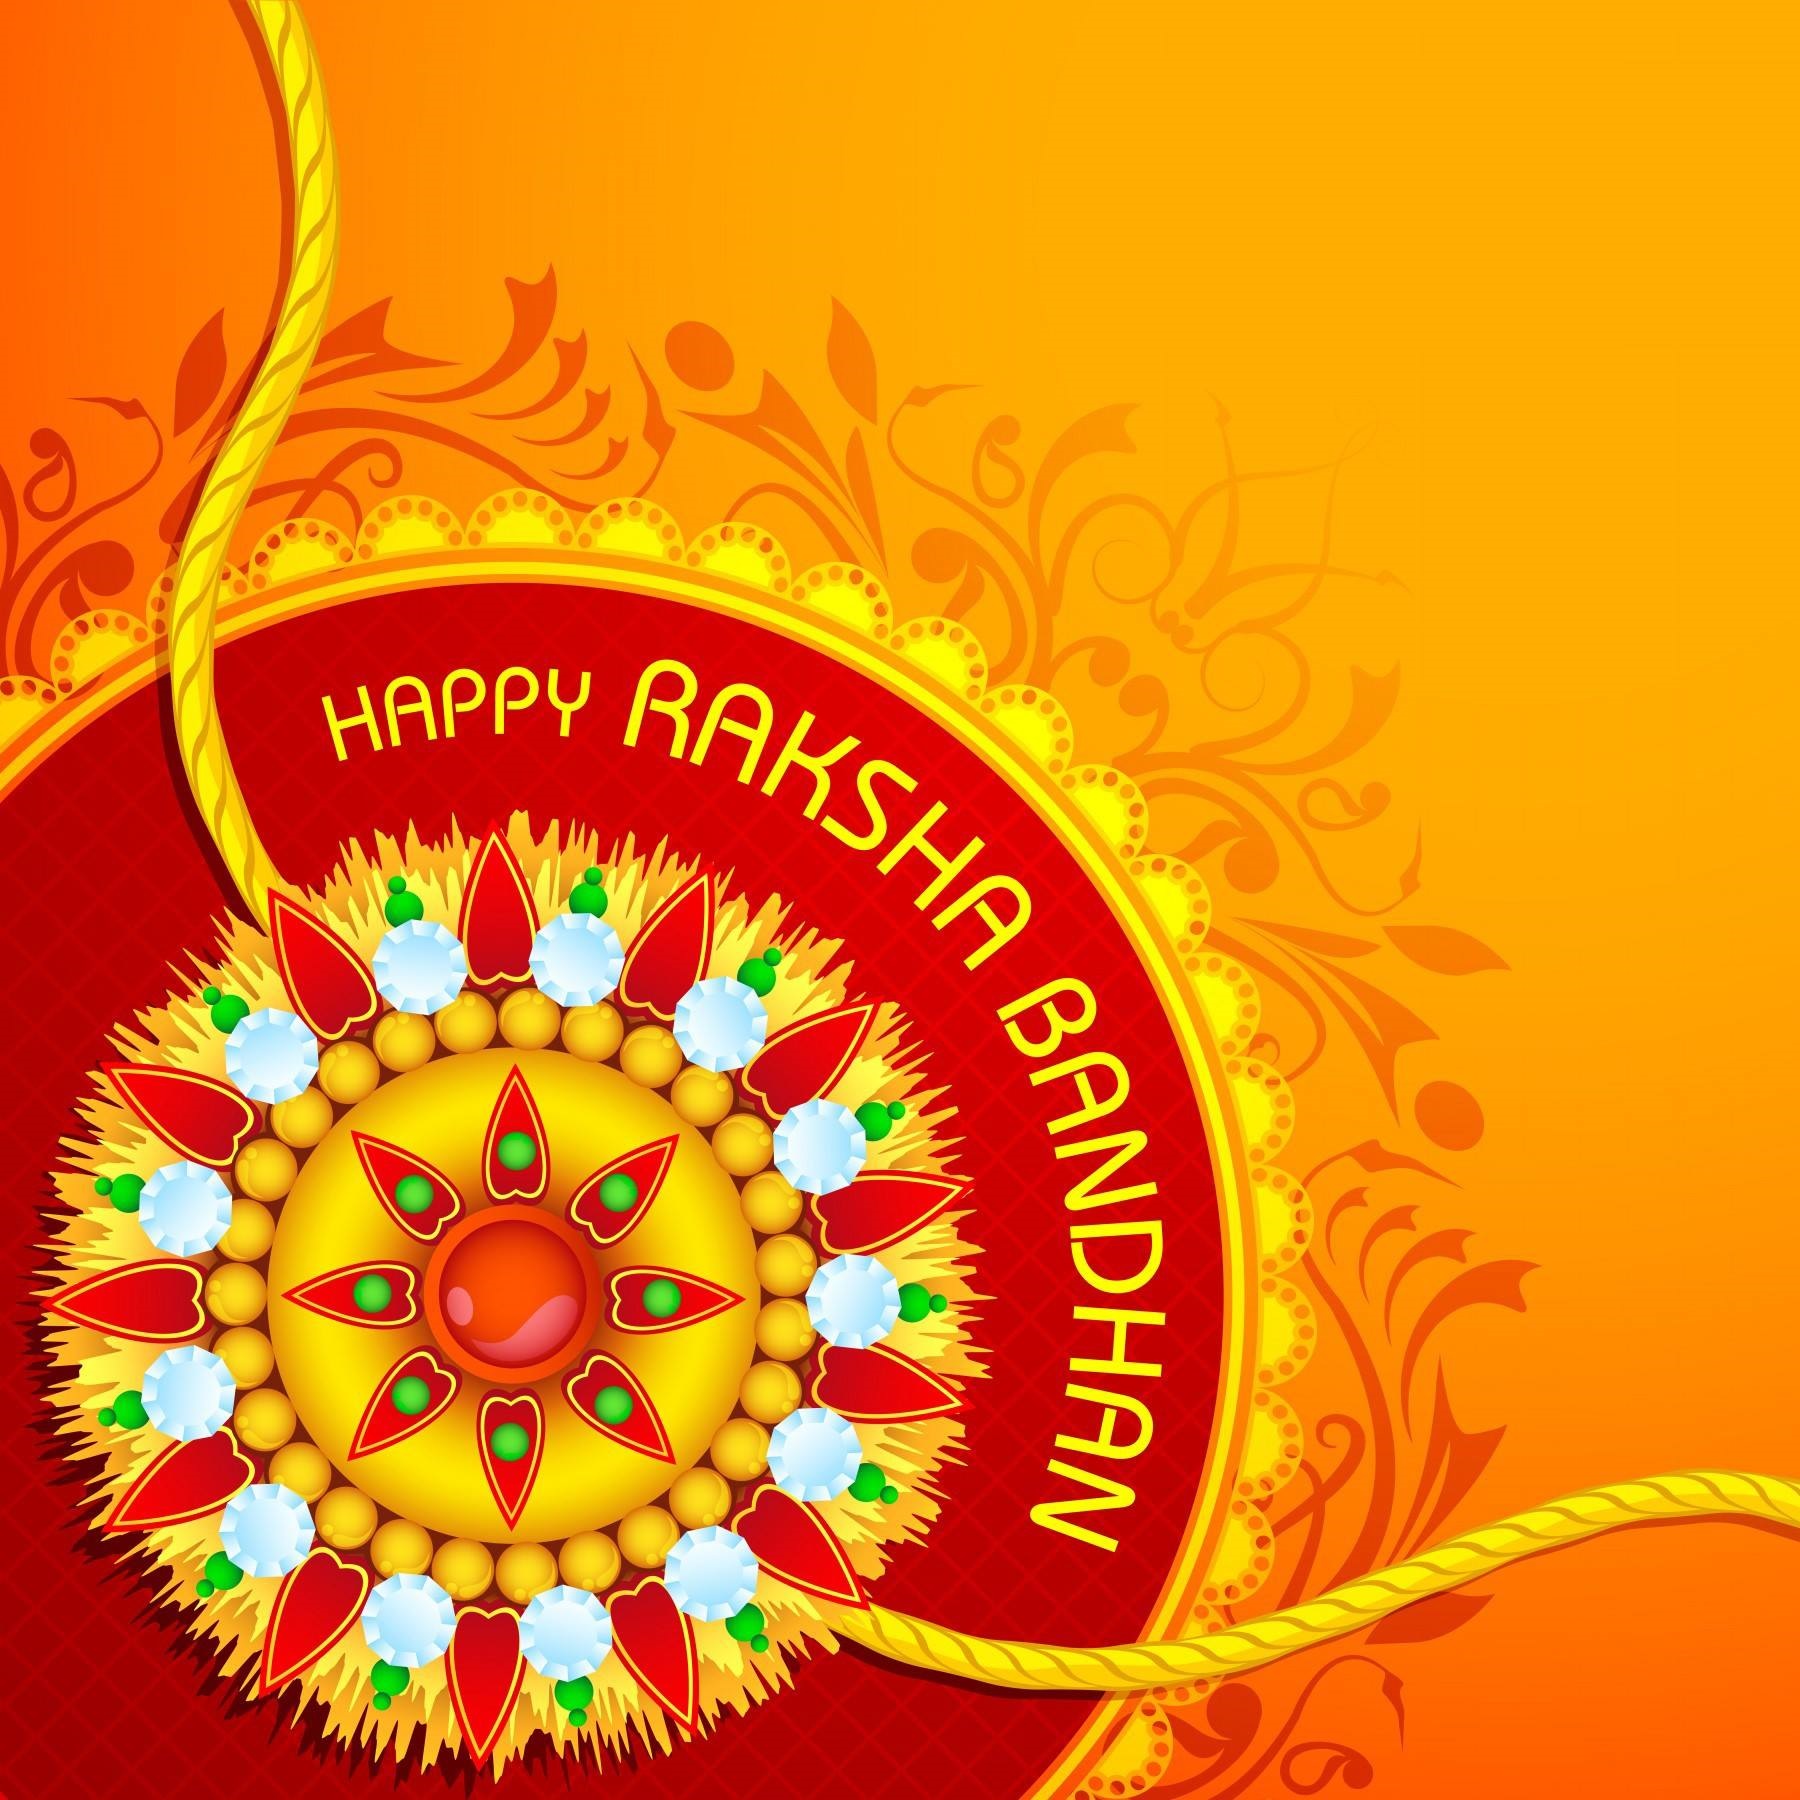 Happy-raksha-bandhan 2015